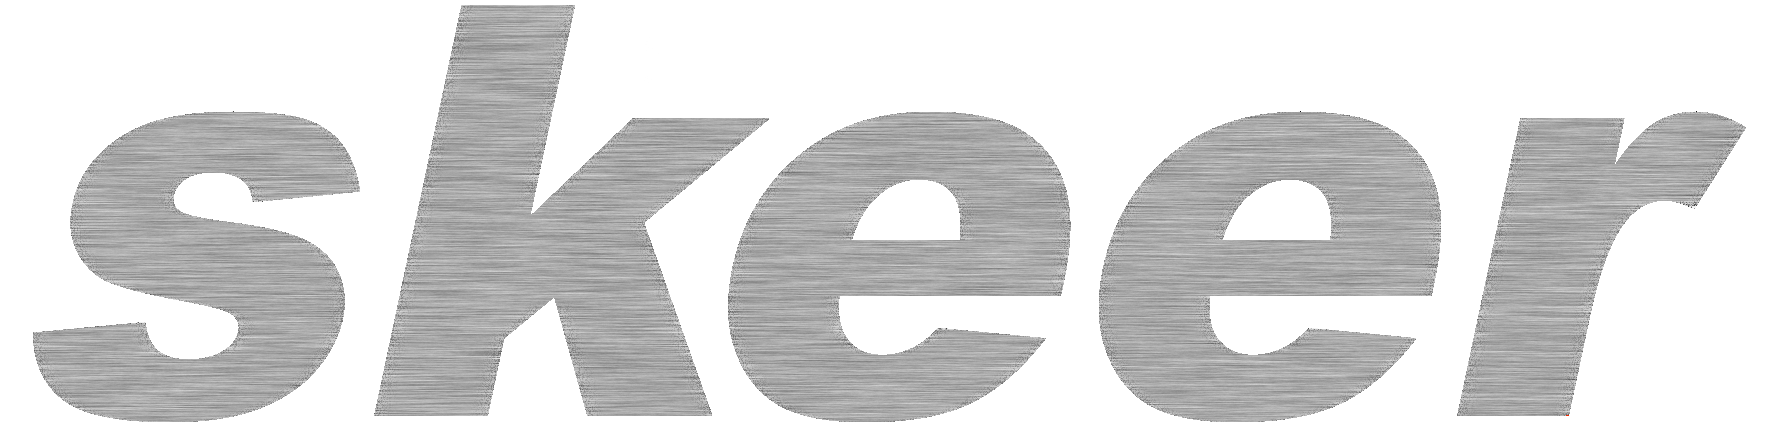 Skeer system